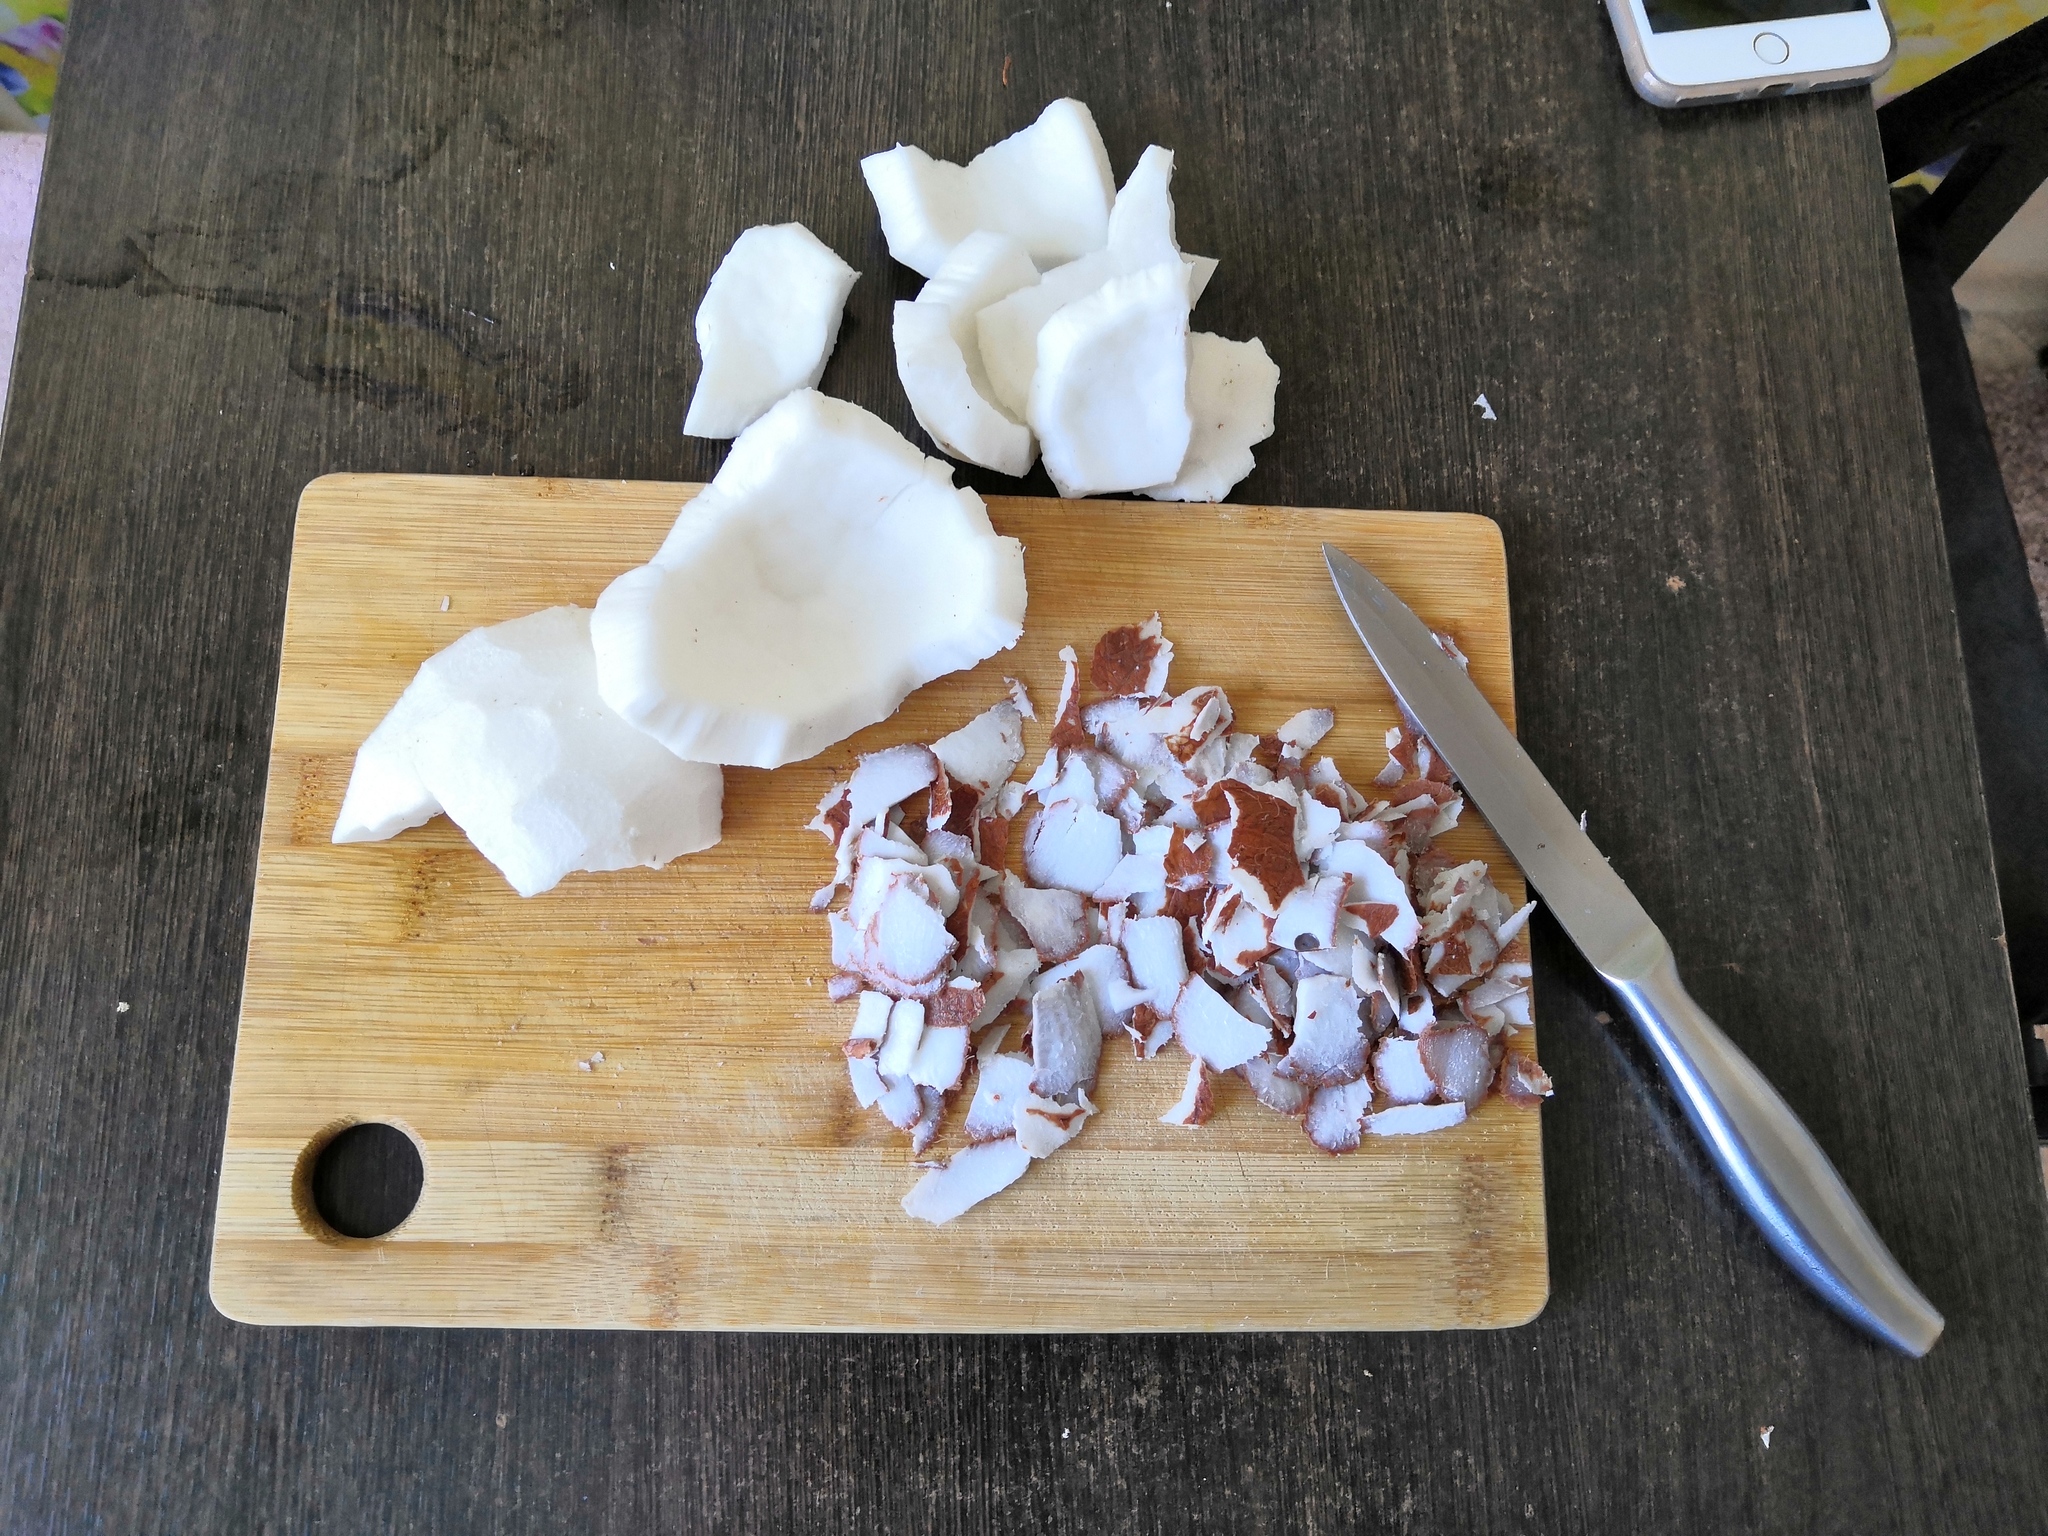 Как приготовить кокосовую стружку и кокосовое молоко? - рецепт с пошаговым фото.